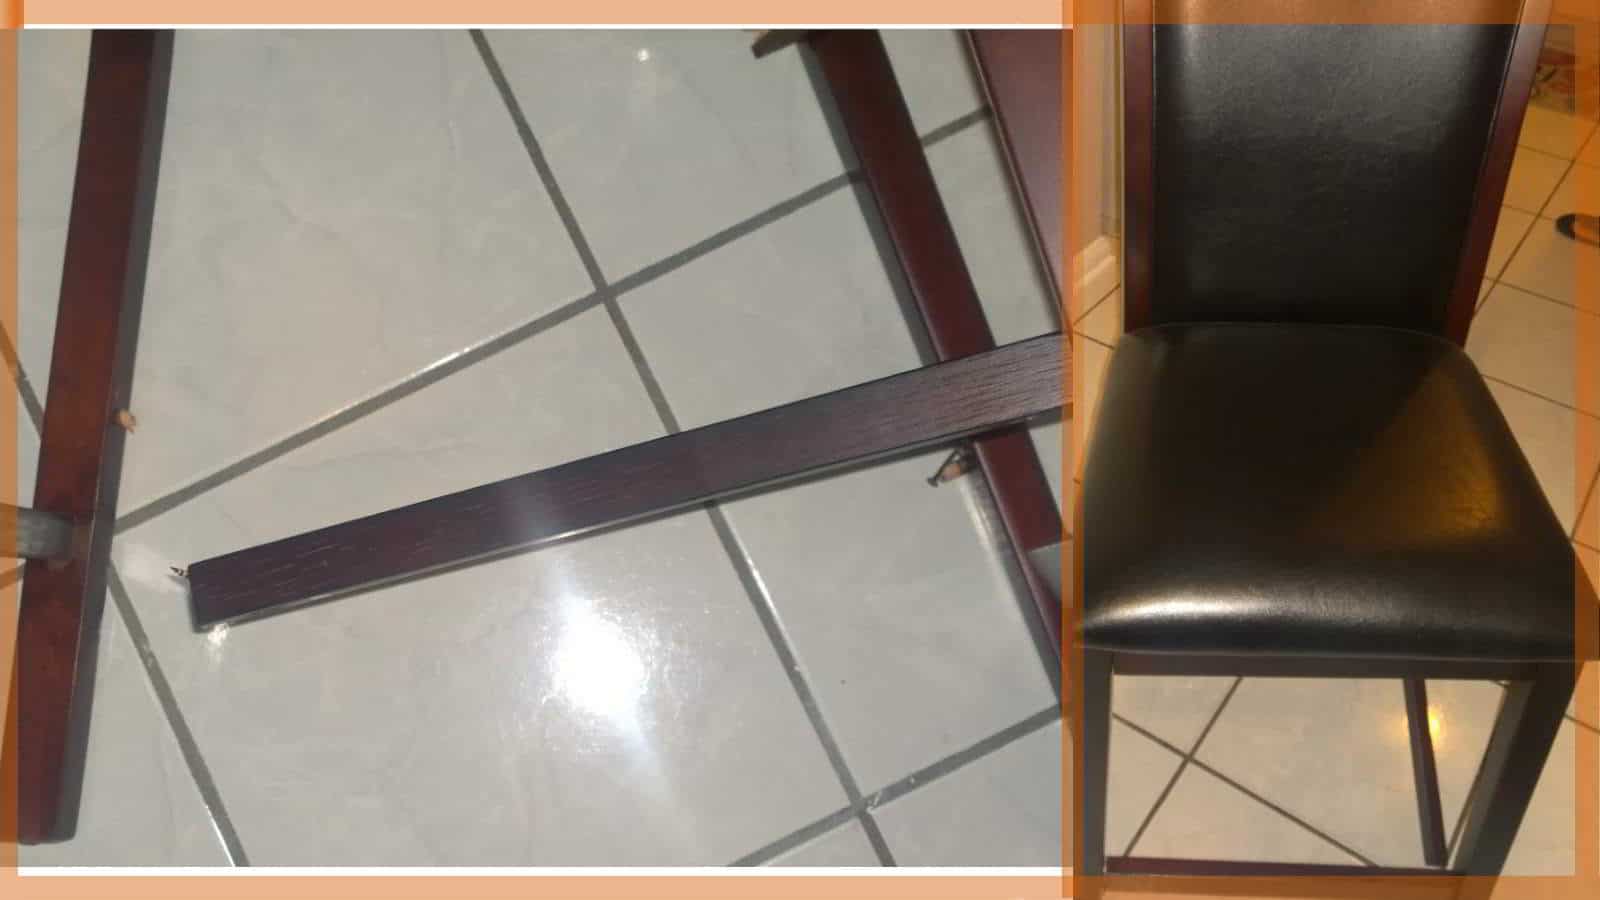 Dining Room Chair Repair ⋆ MasterTech Furniture Repair